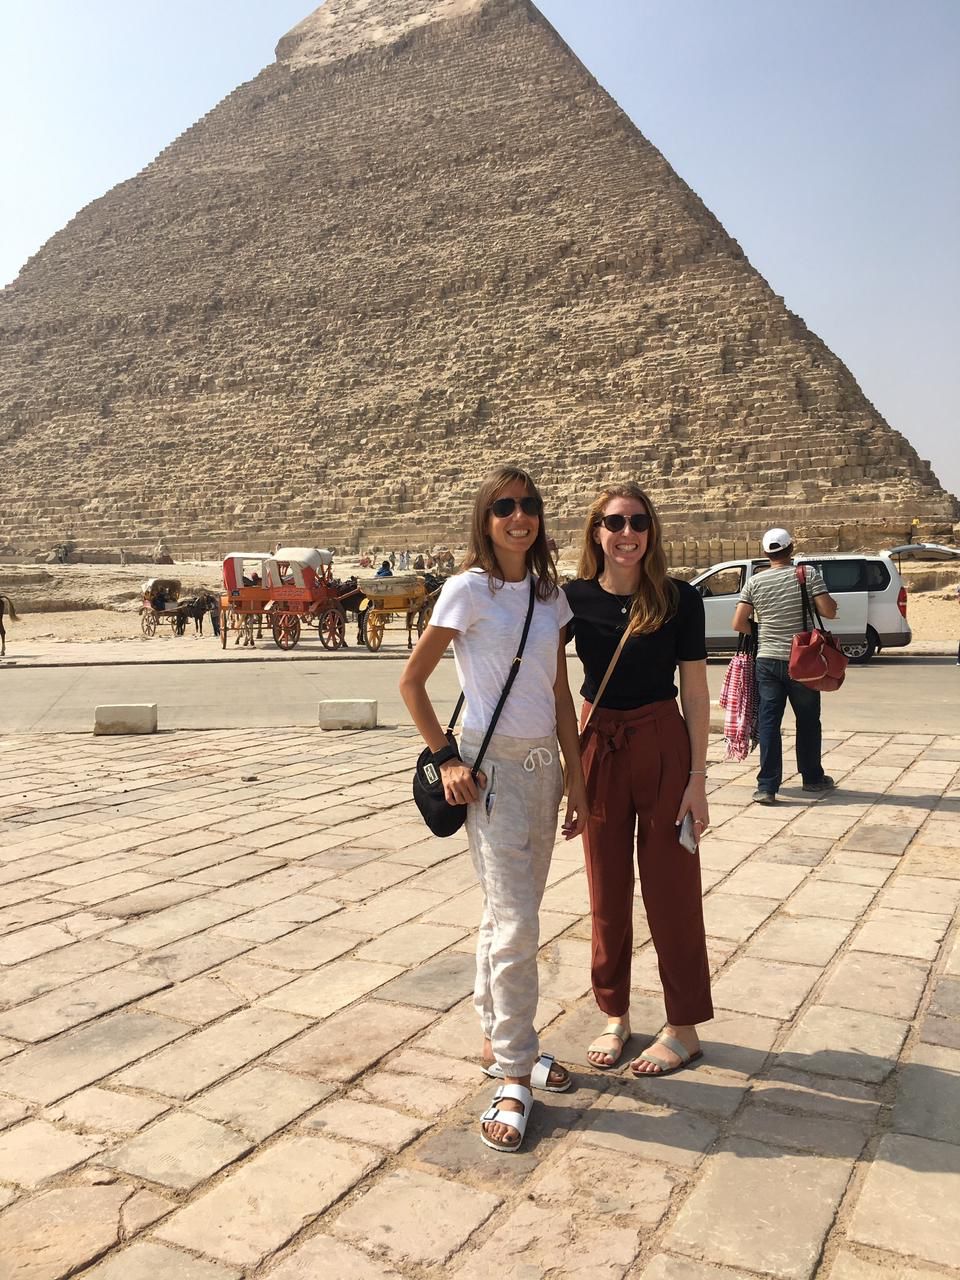 Trip To Egypt